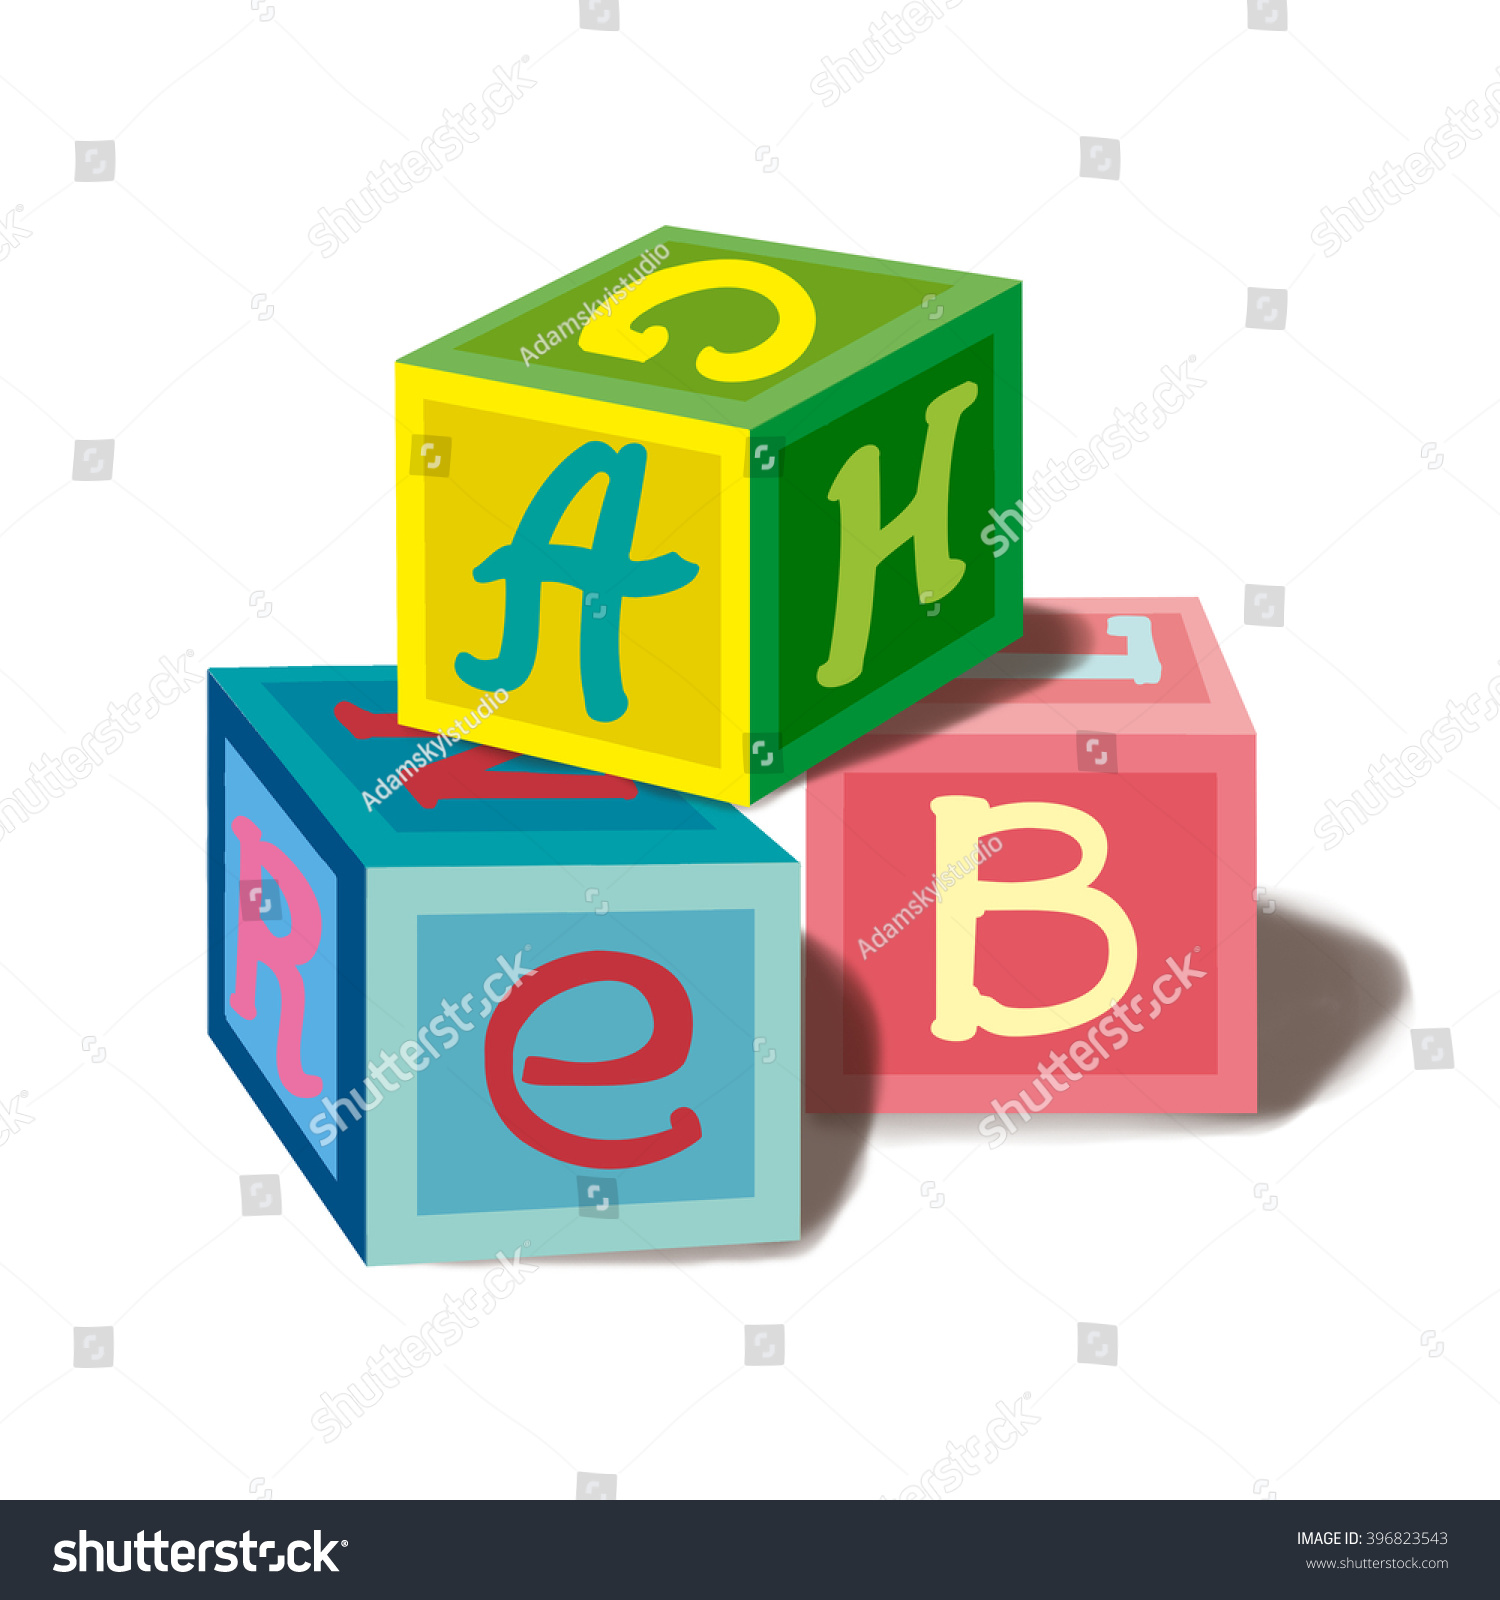 Детские кубики вектор